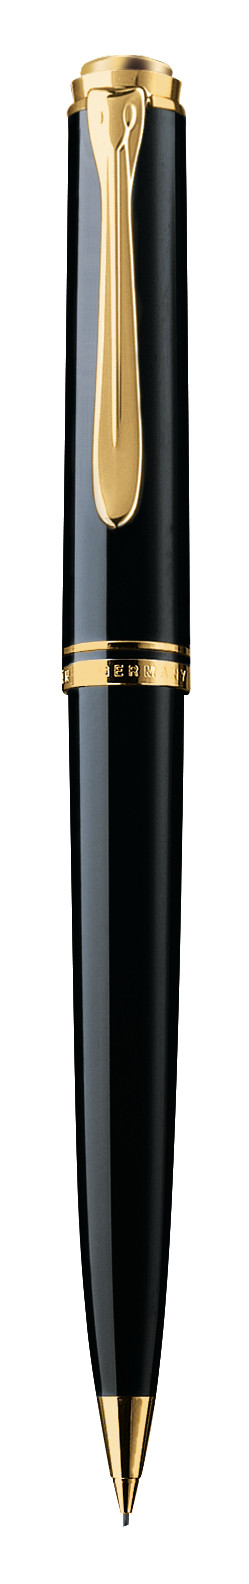 Pelikan Pencil Souverän® 600 Black in a case